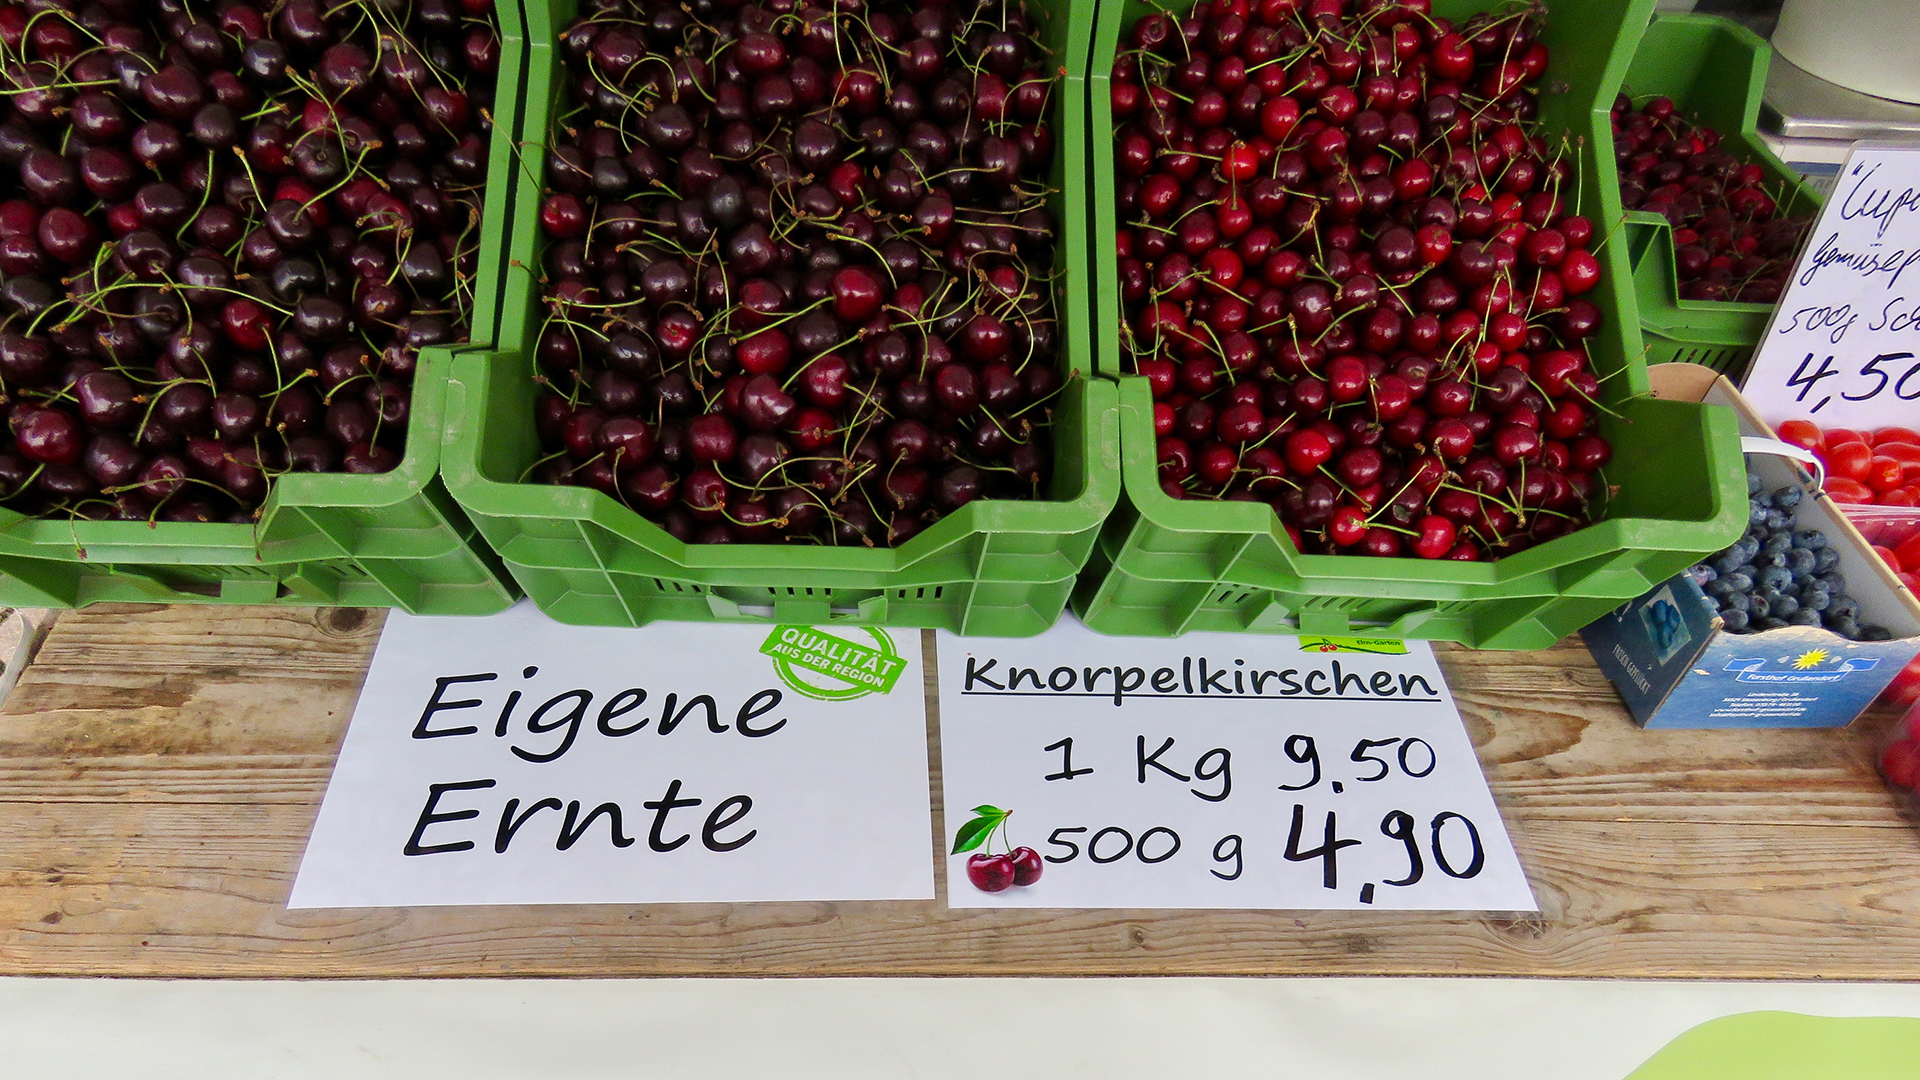 Knorpelkirschen von Krügers Elm-Gärtnerei